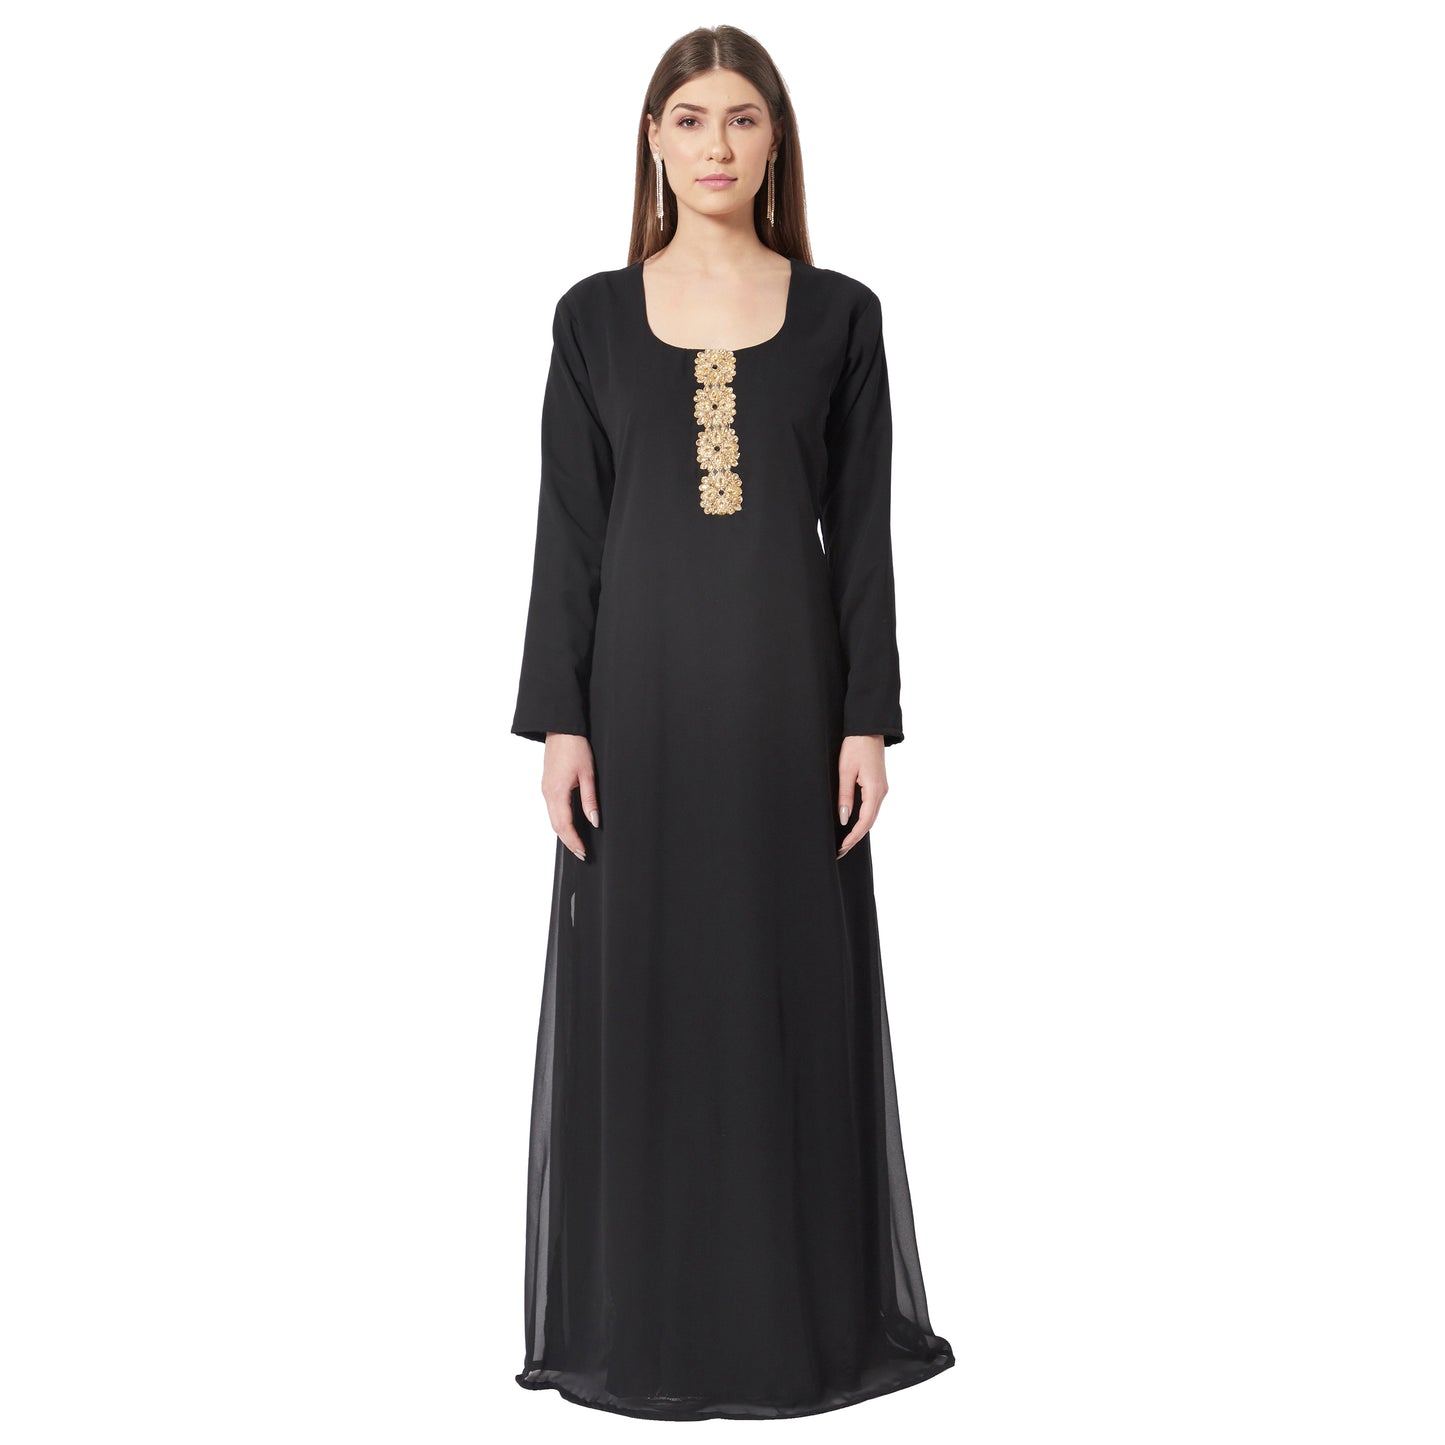 Designer Cache Heavily beaded Silver black ball dress gown S 0-4 | eBay